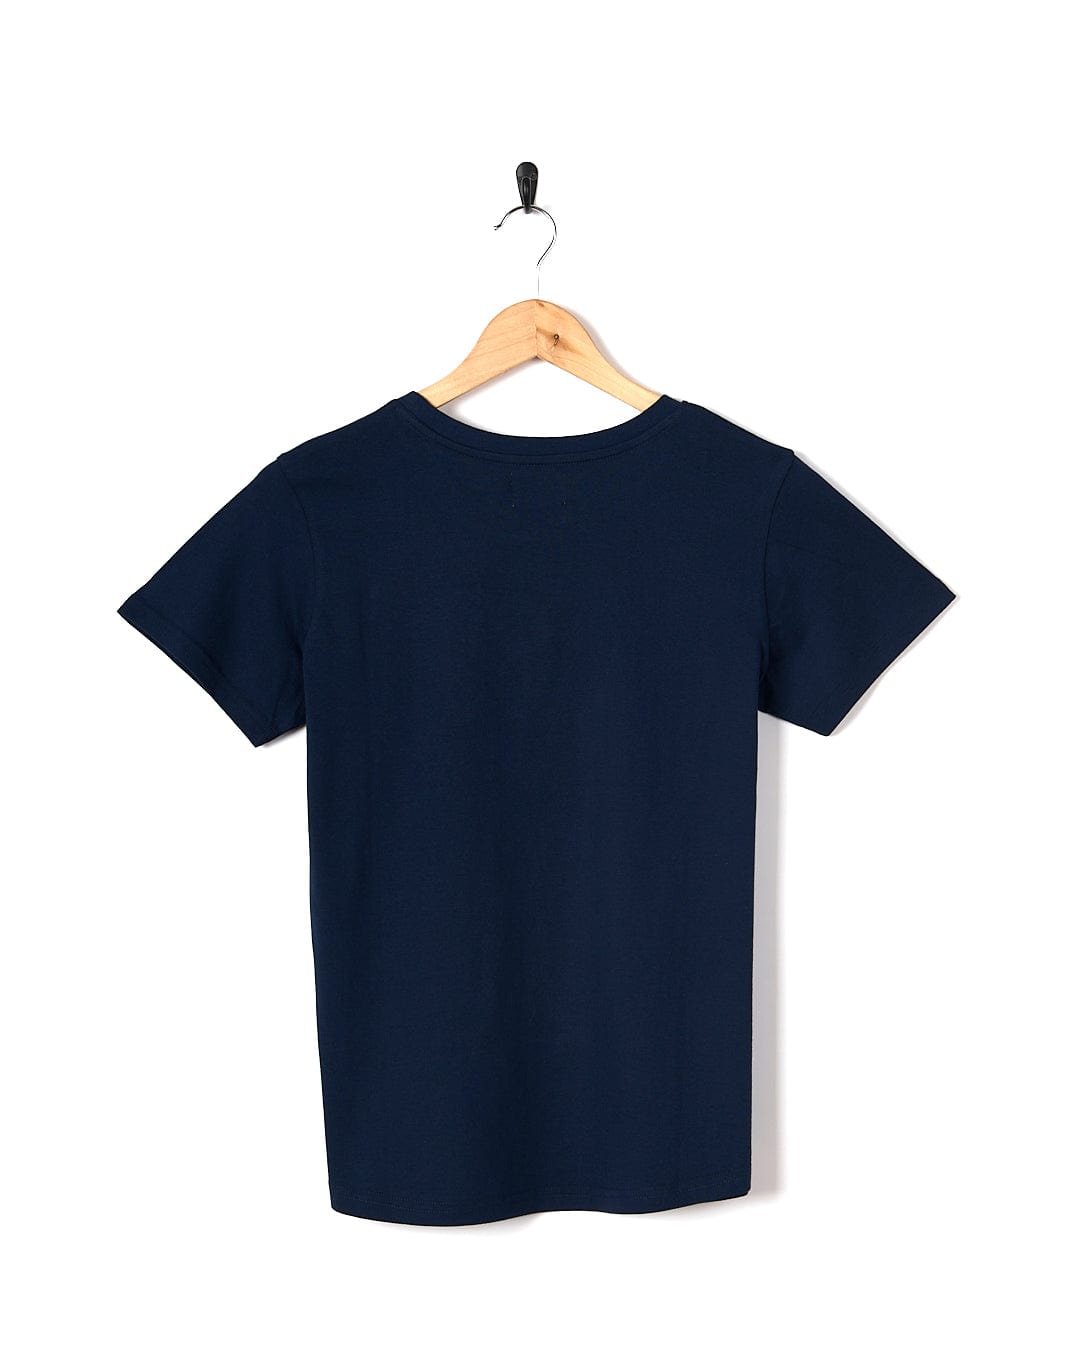 A navy Celeste Stripe - Womens Short Sleeve T-Shirt - Blue hanging on a wooden hanger. (Brand: Saltrock)